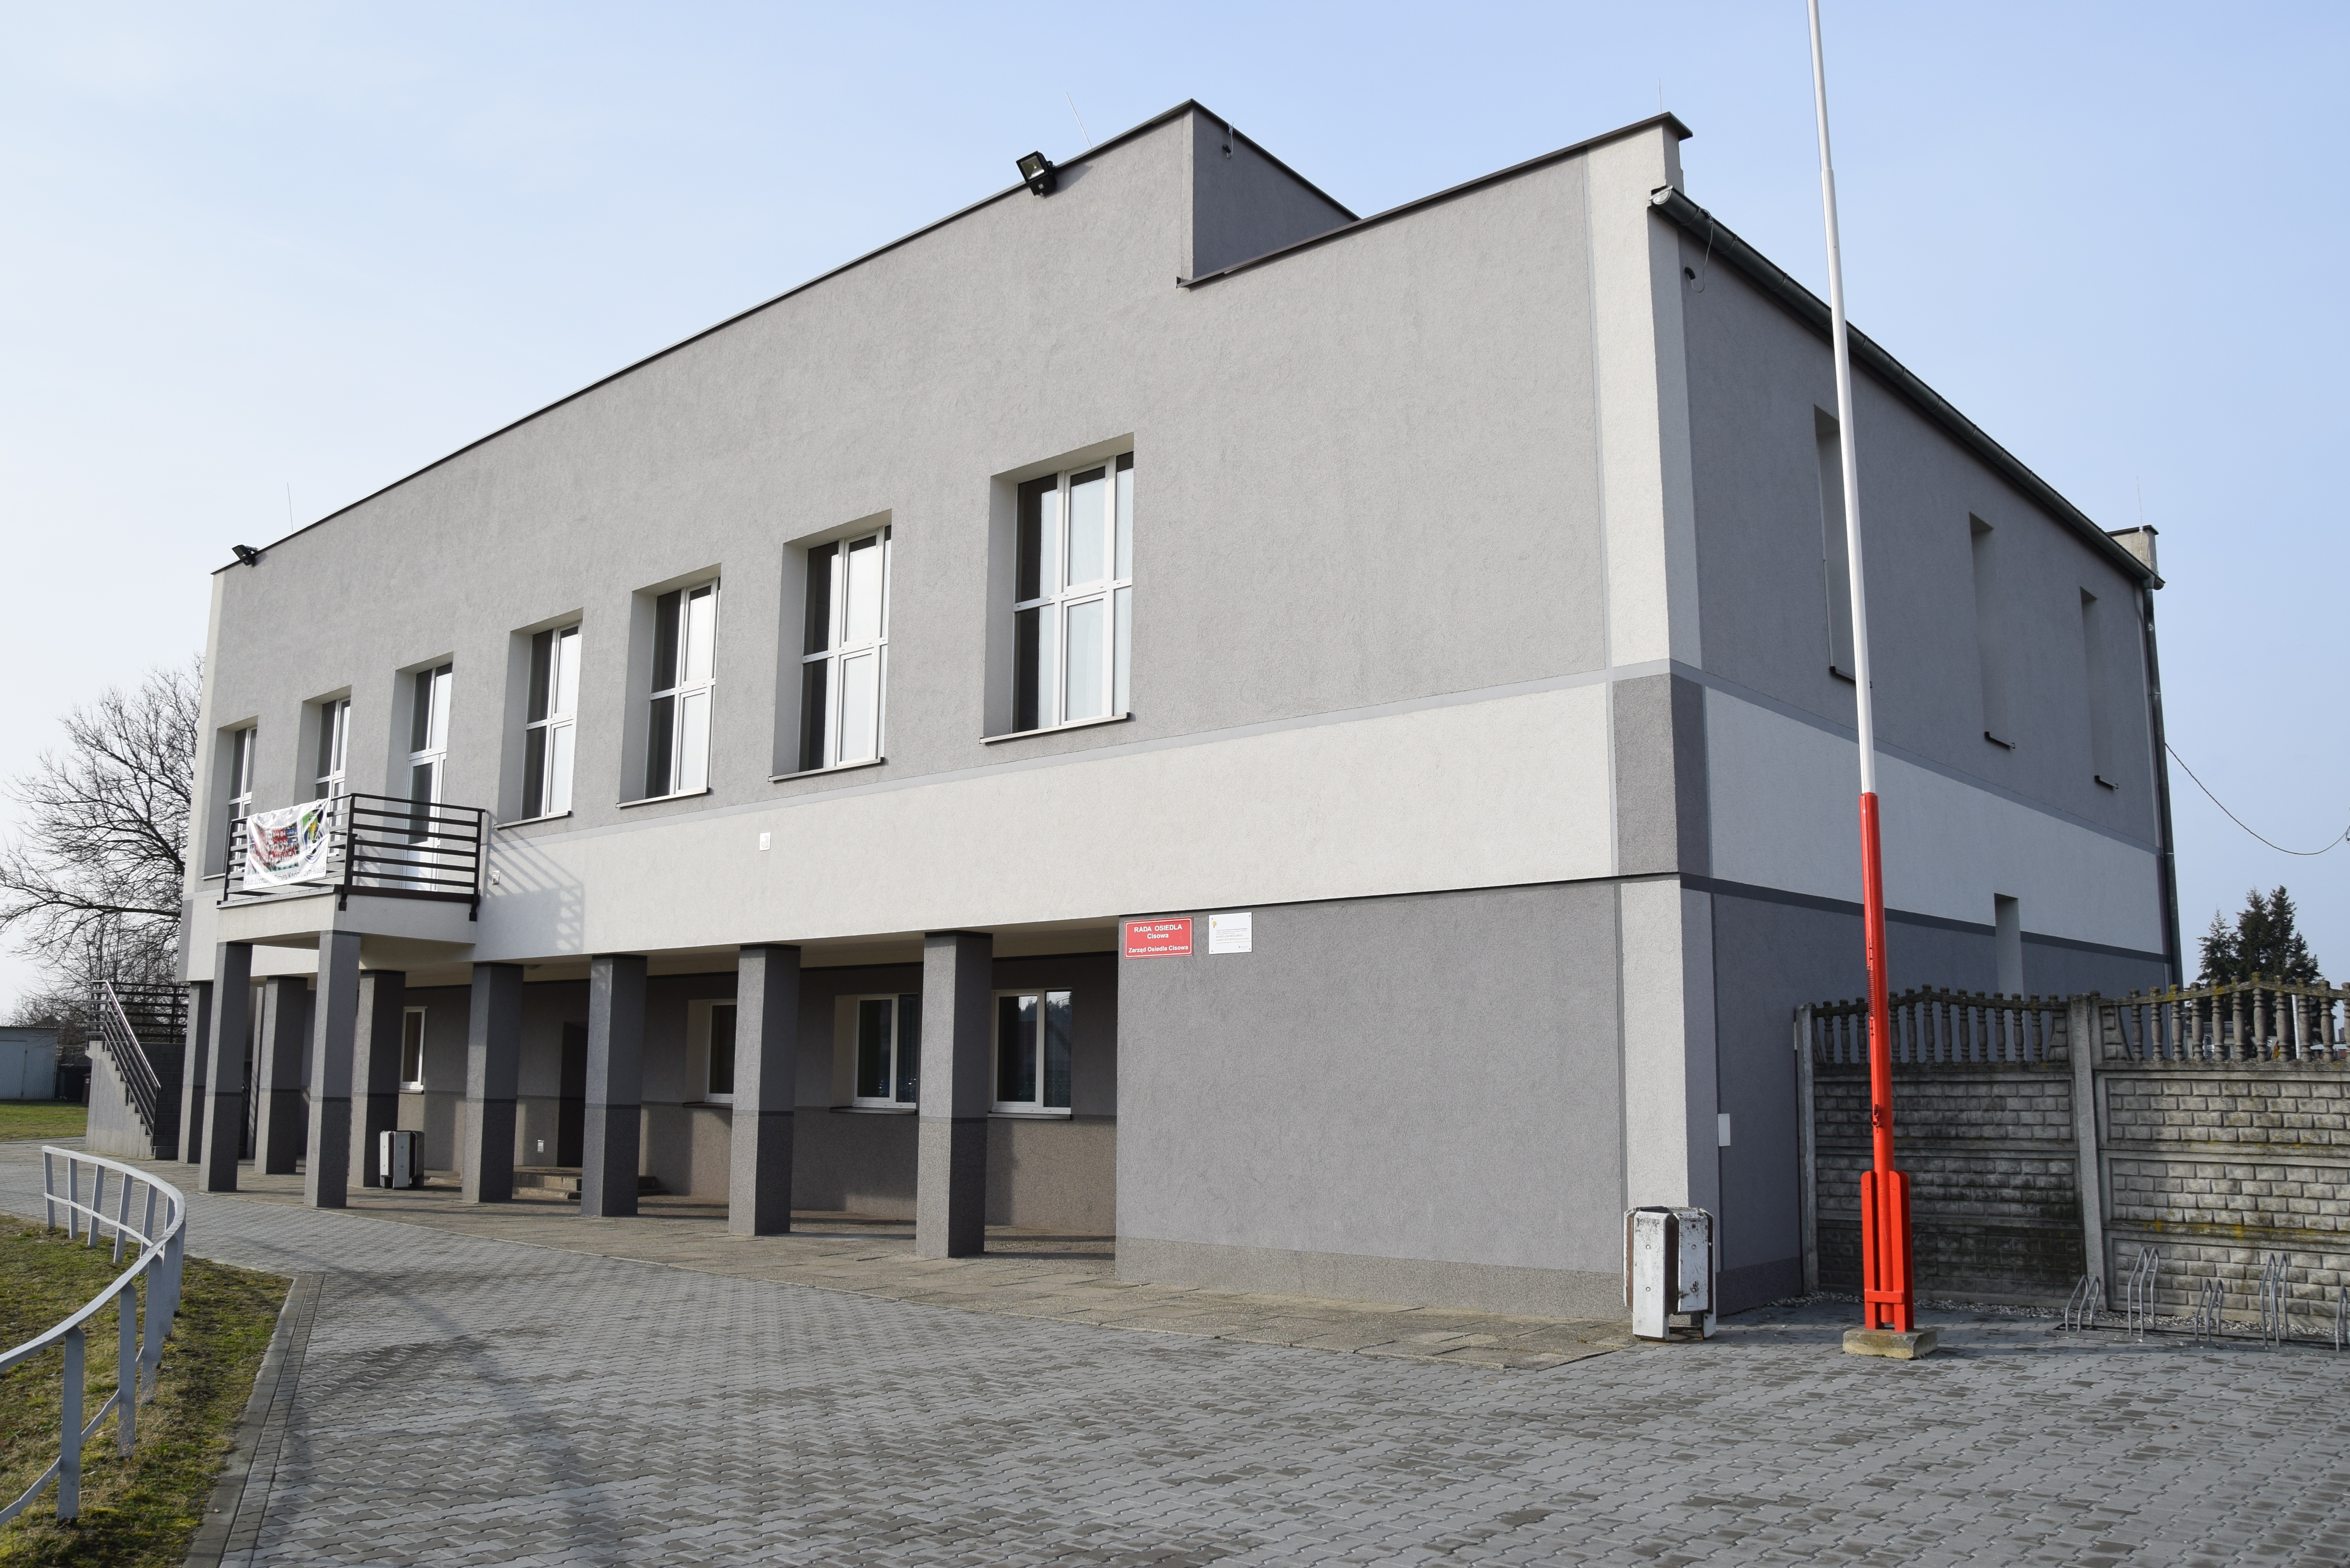 Termomodernizacja budynku „Domu Sportowca” w osiedlu Cisowa w Kędzierzynie-Koźlu